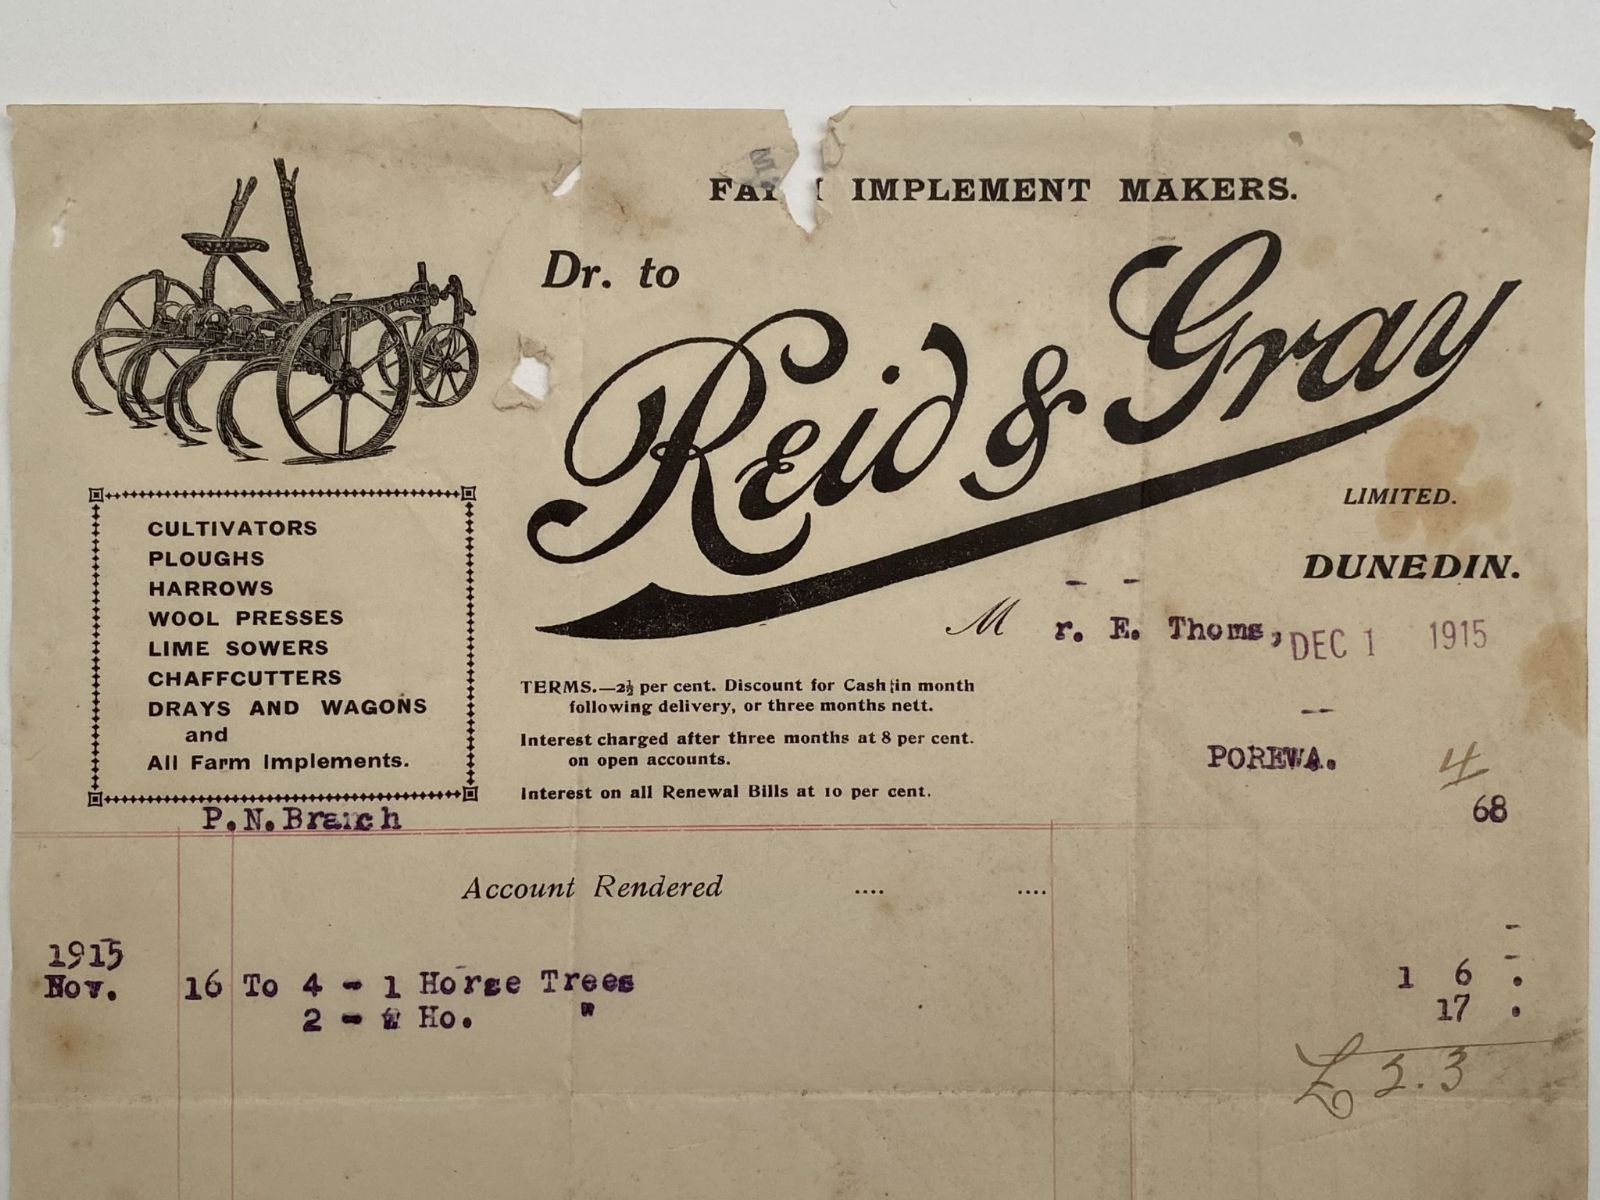 OLD INVOICE / RECEIPT: from Reid & Gray - Farm Implements, Dunedin 1915 (107 yo)